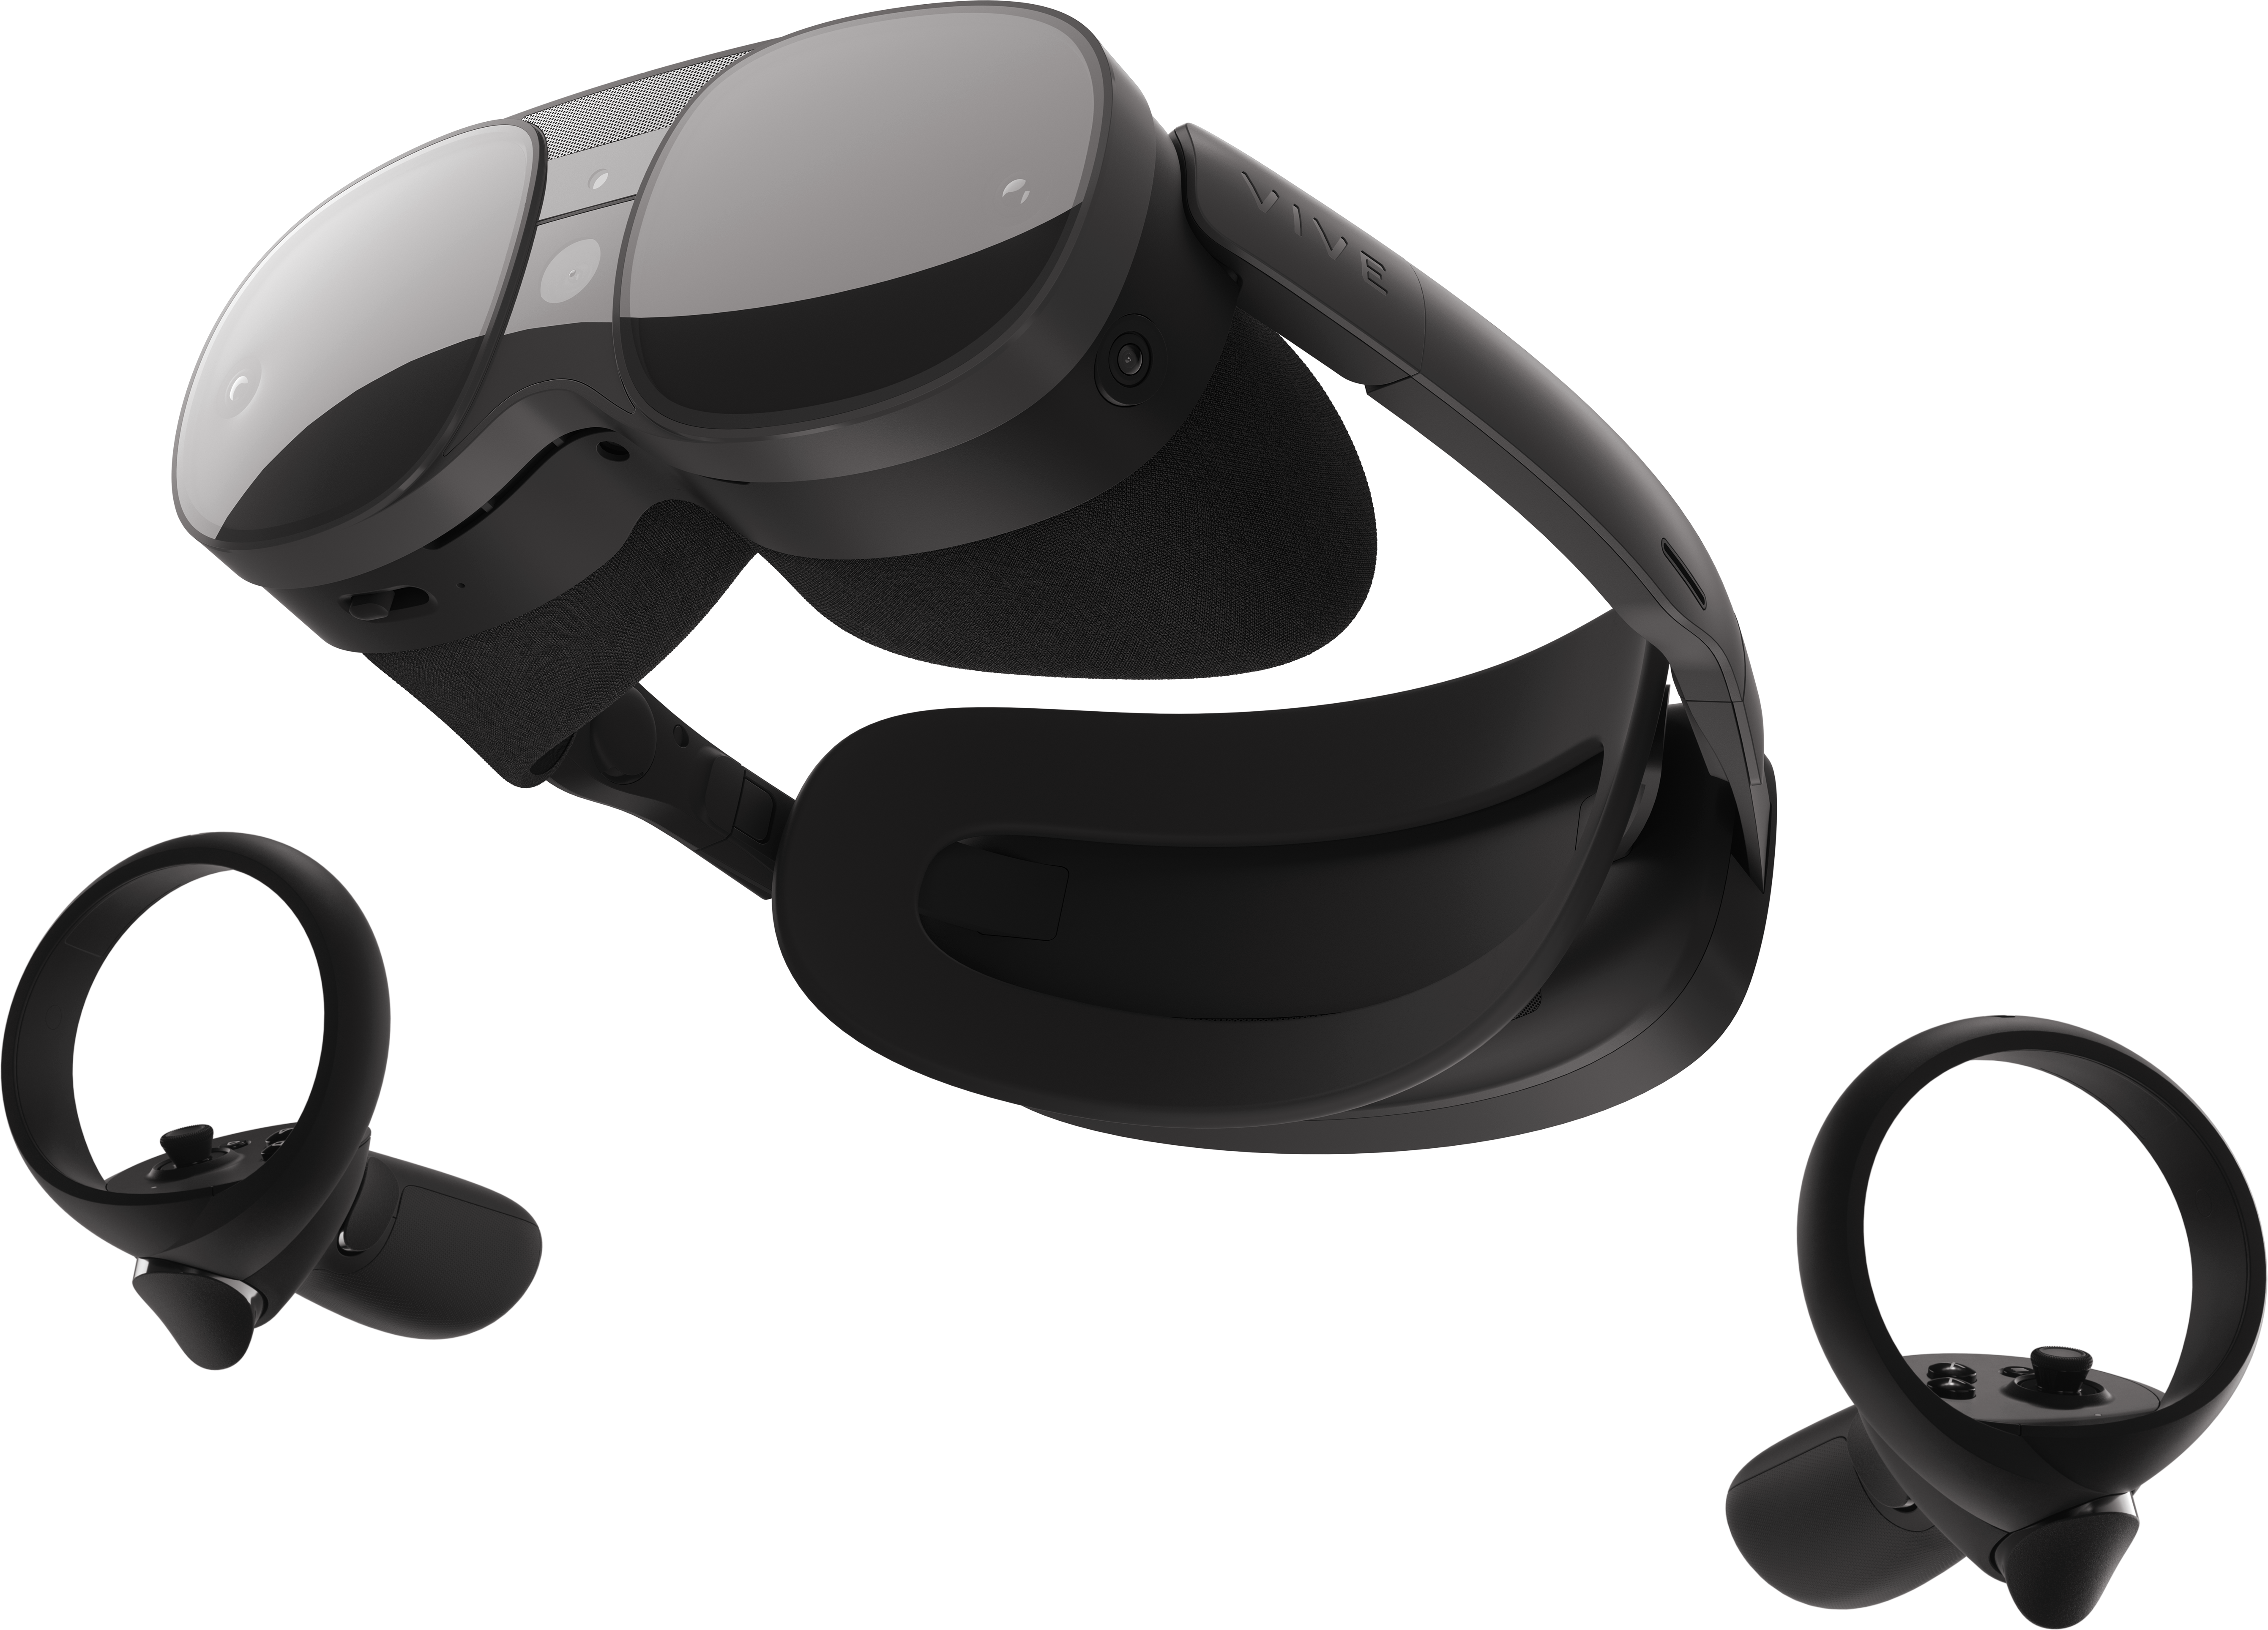 Alquila Meta Quest Pro Gafas de realidad virtual desde 89,90 € al mes